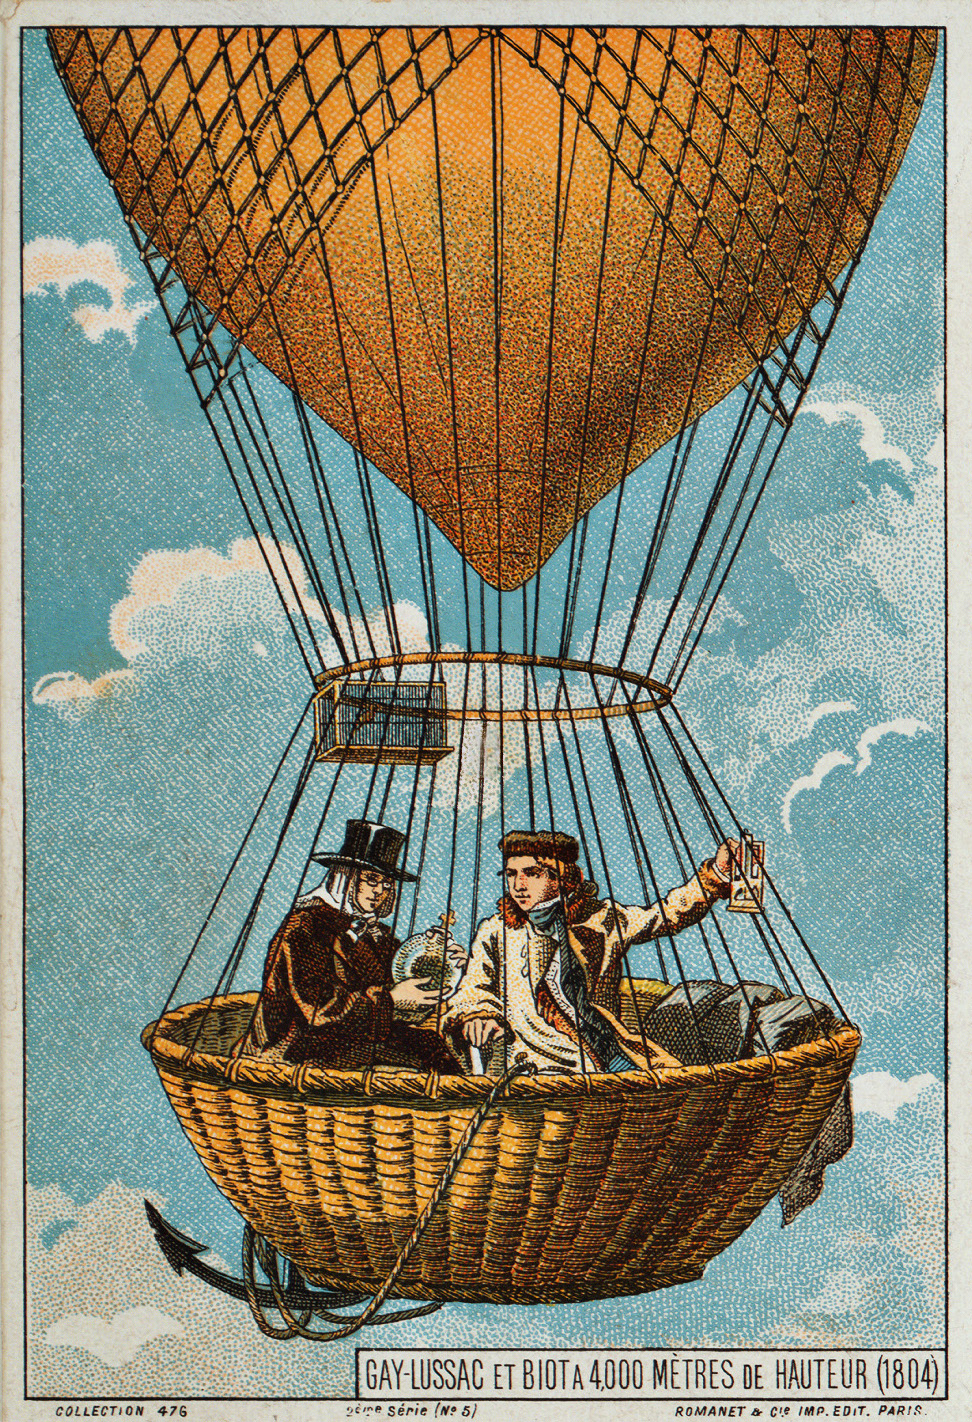 Gay-Lussac i Biot w balonie, 1804 r. Obrazek z wieku XIX opublikowany przez Paris: Romanet & cie., imp. edit., w okresie pomiędzy 1890-1900 rokiem.